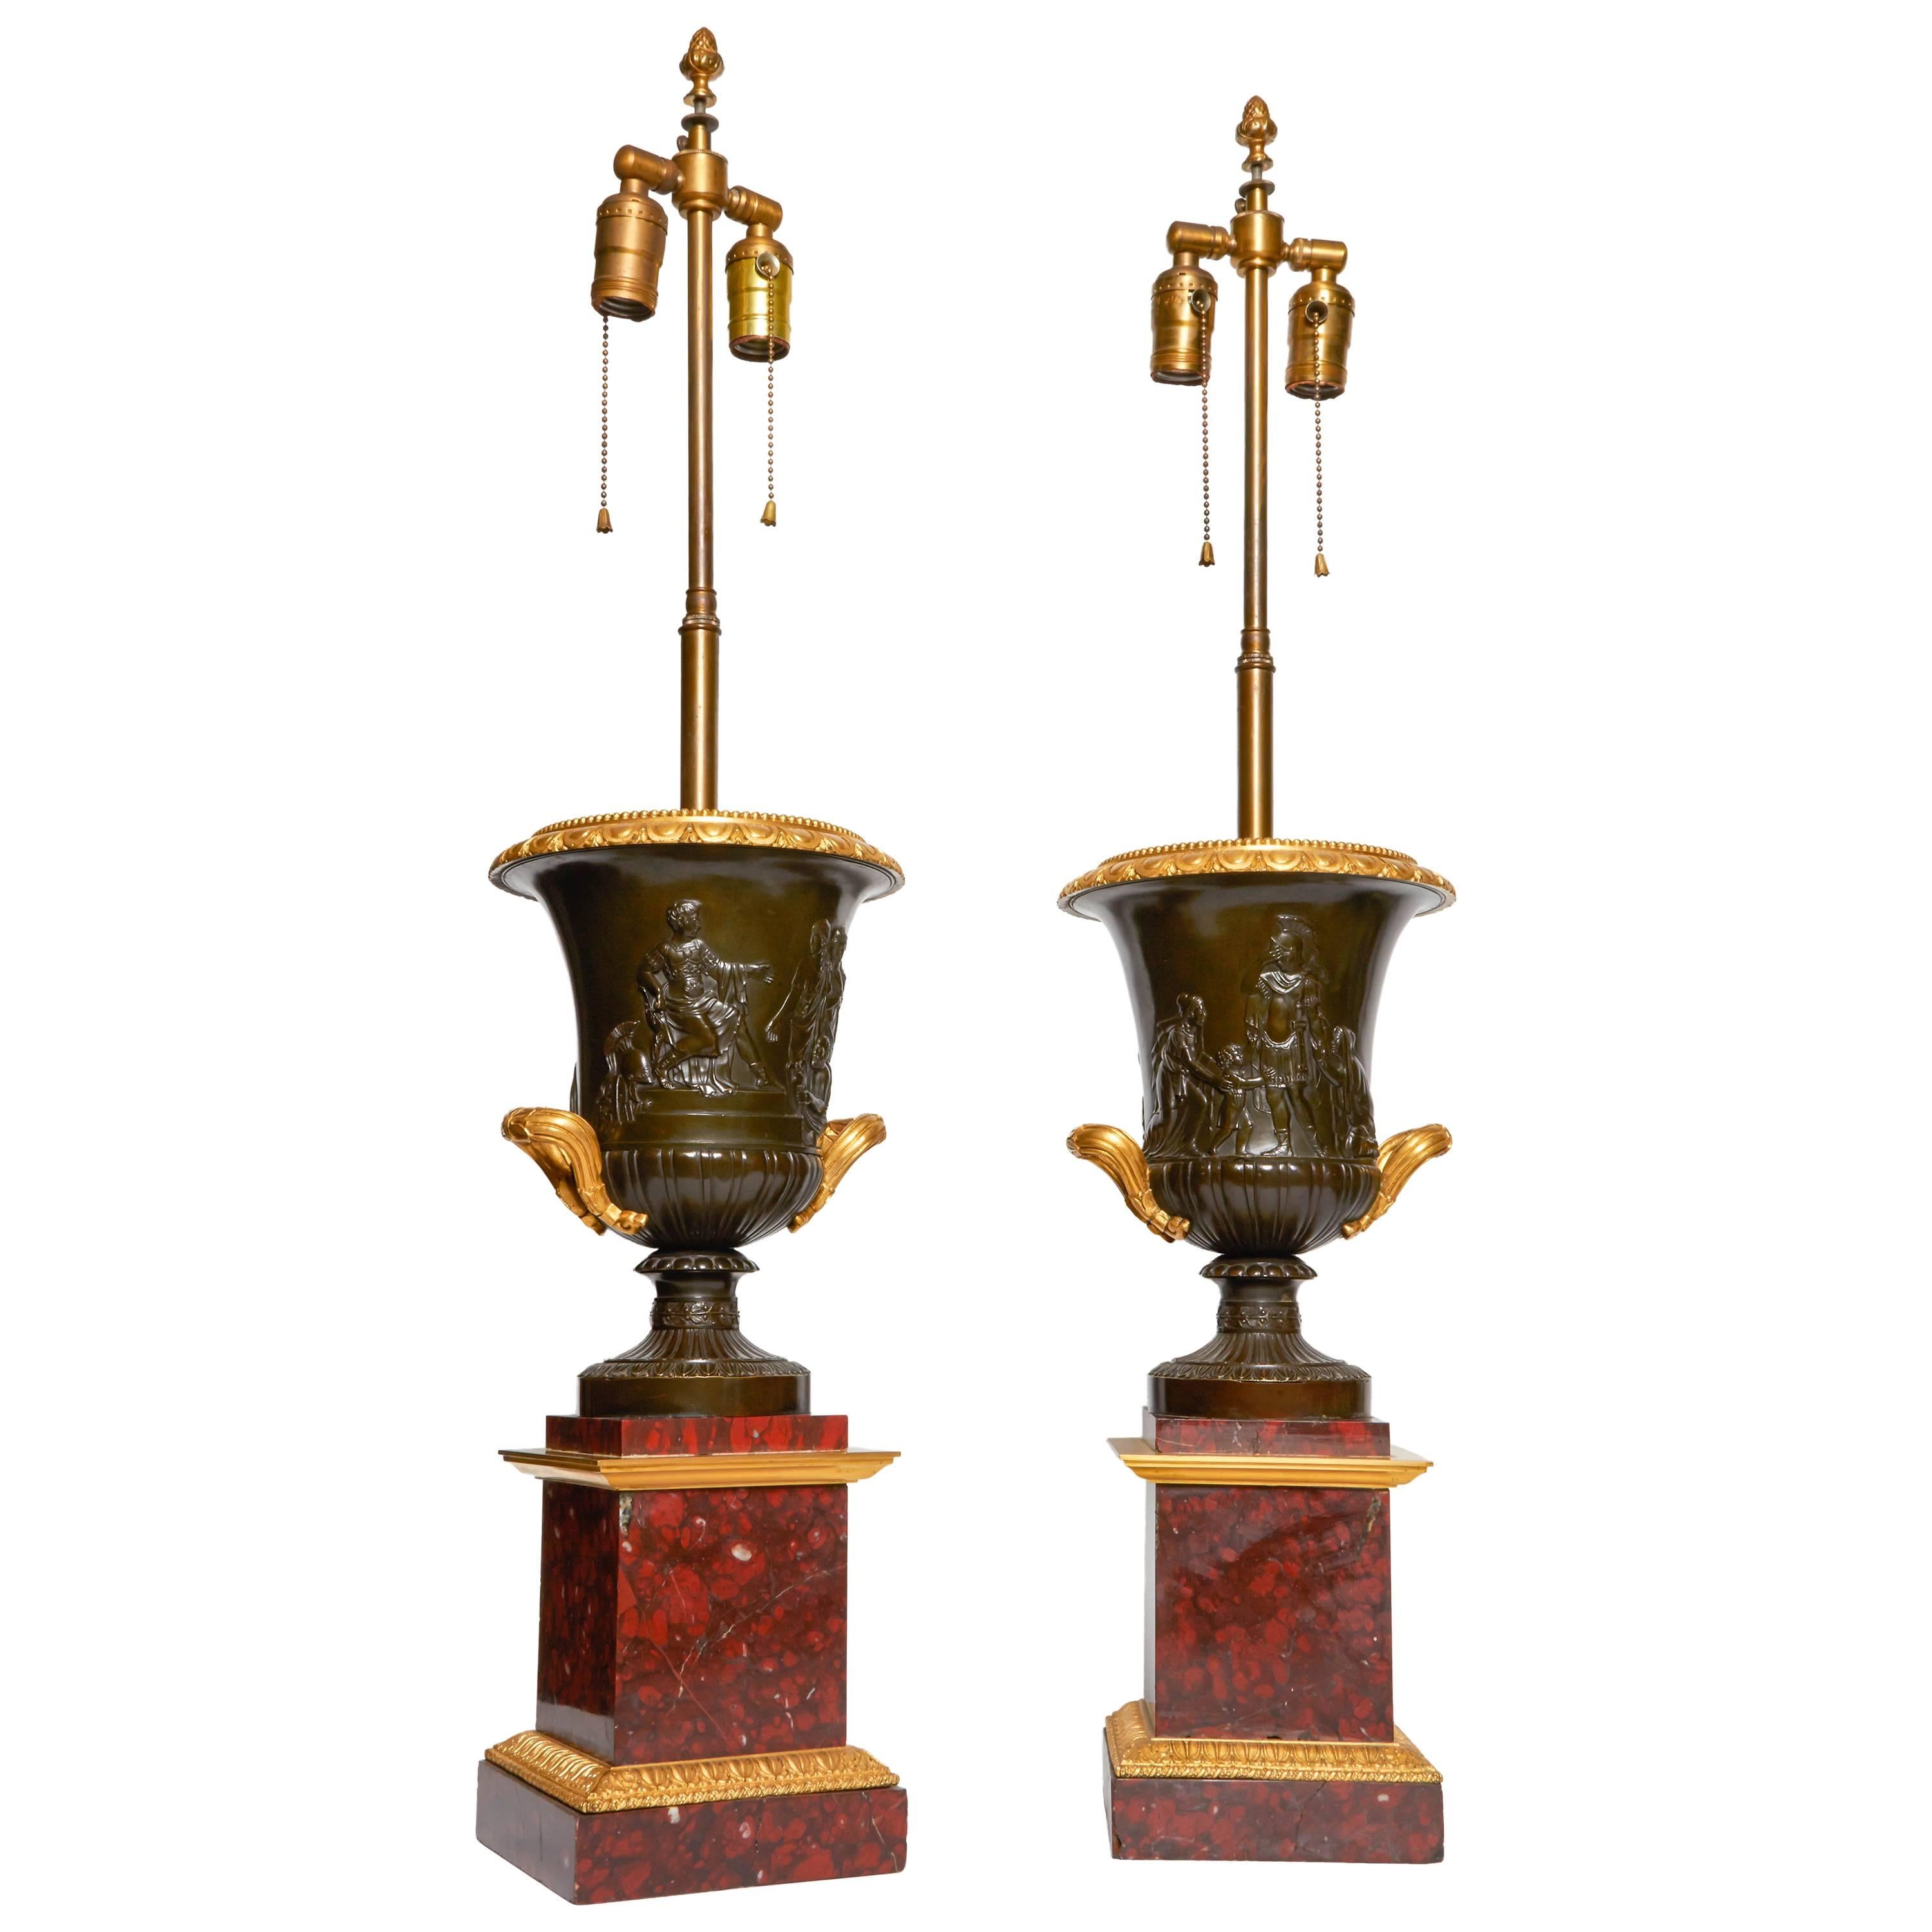 Paire de grandes urnes ou lampes néoclassiques anciennes en bronze en forme de campane